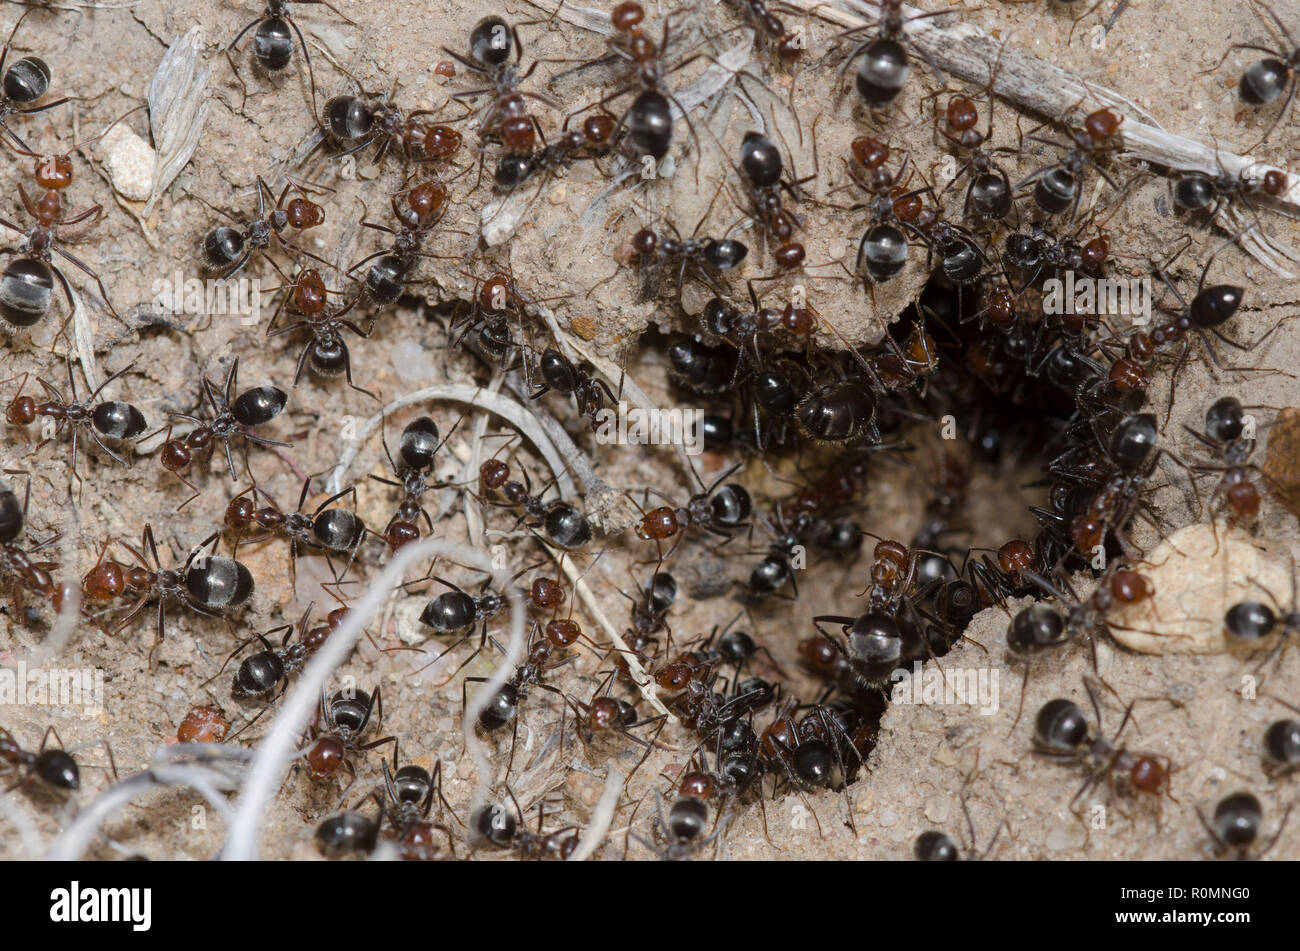 Honeypot Ants, Myrmecocystus mimicus, at nest entrance Stock Photo